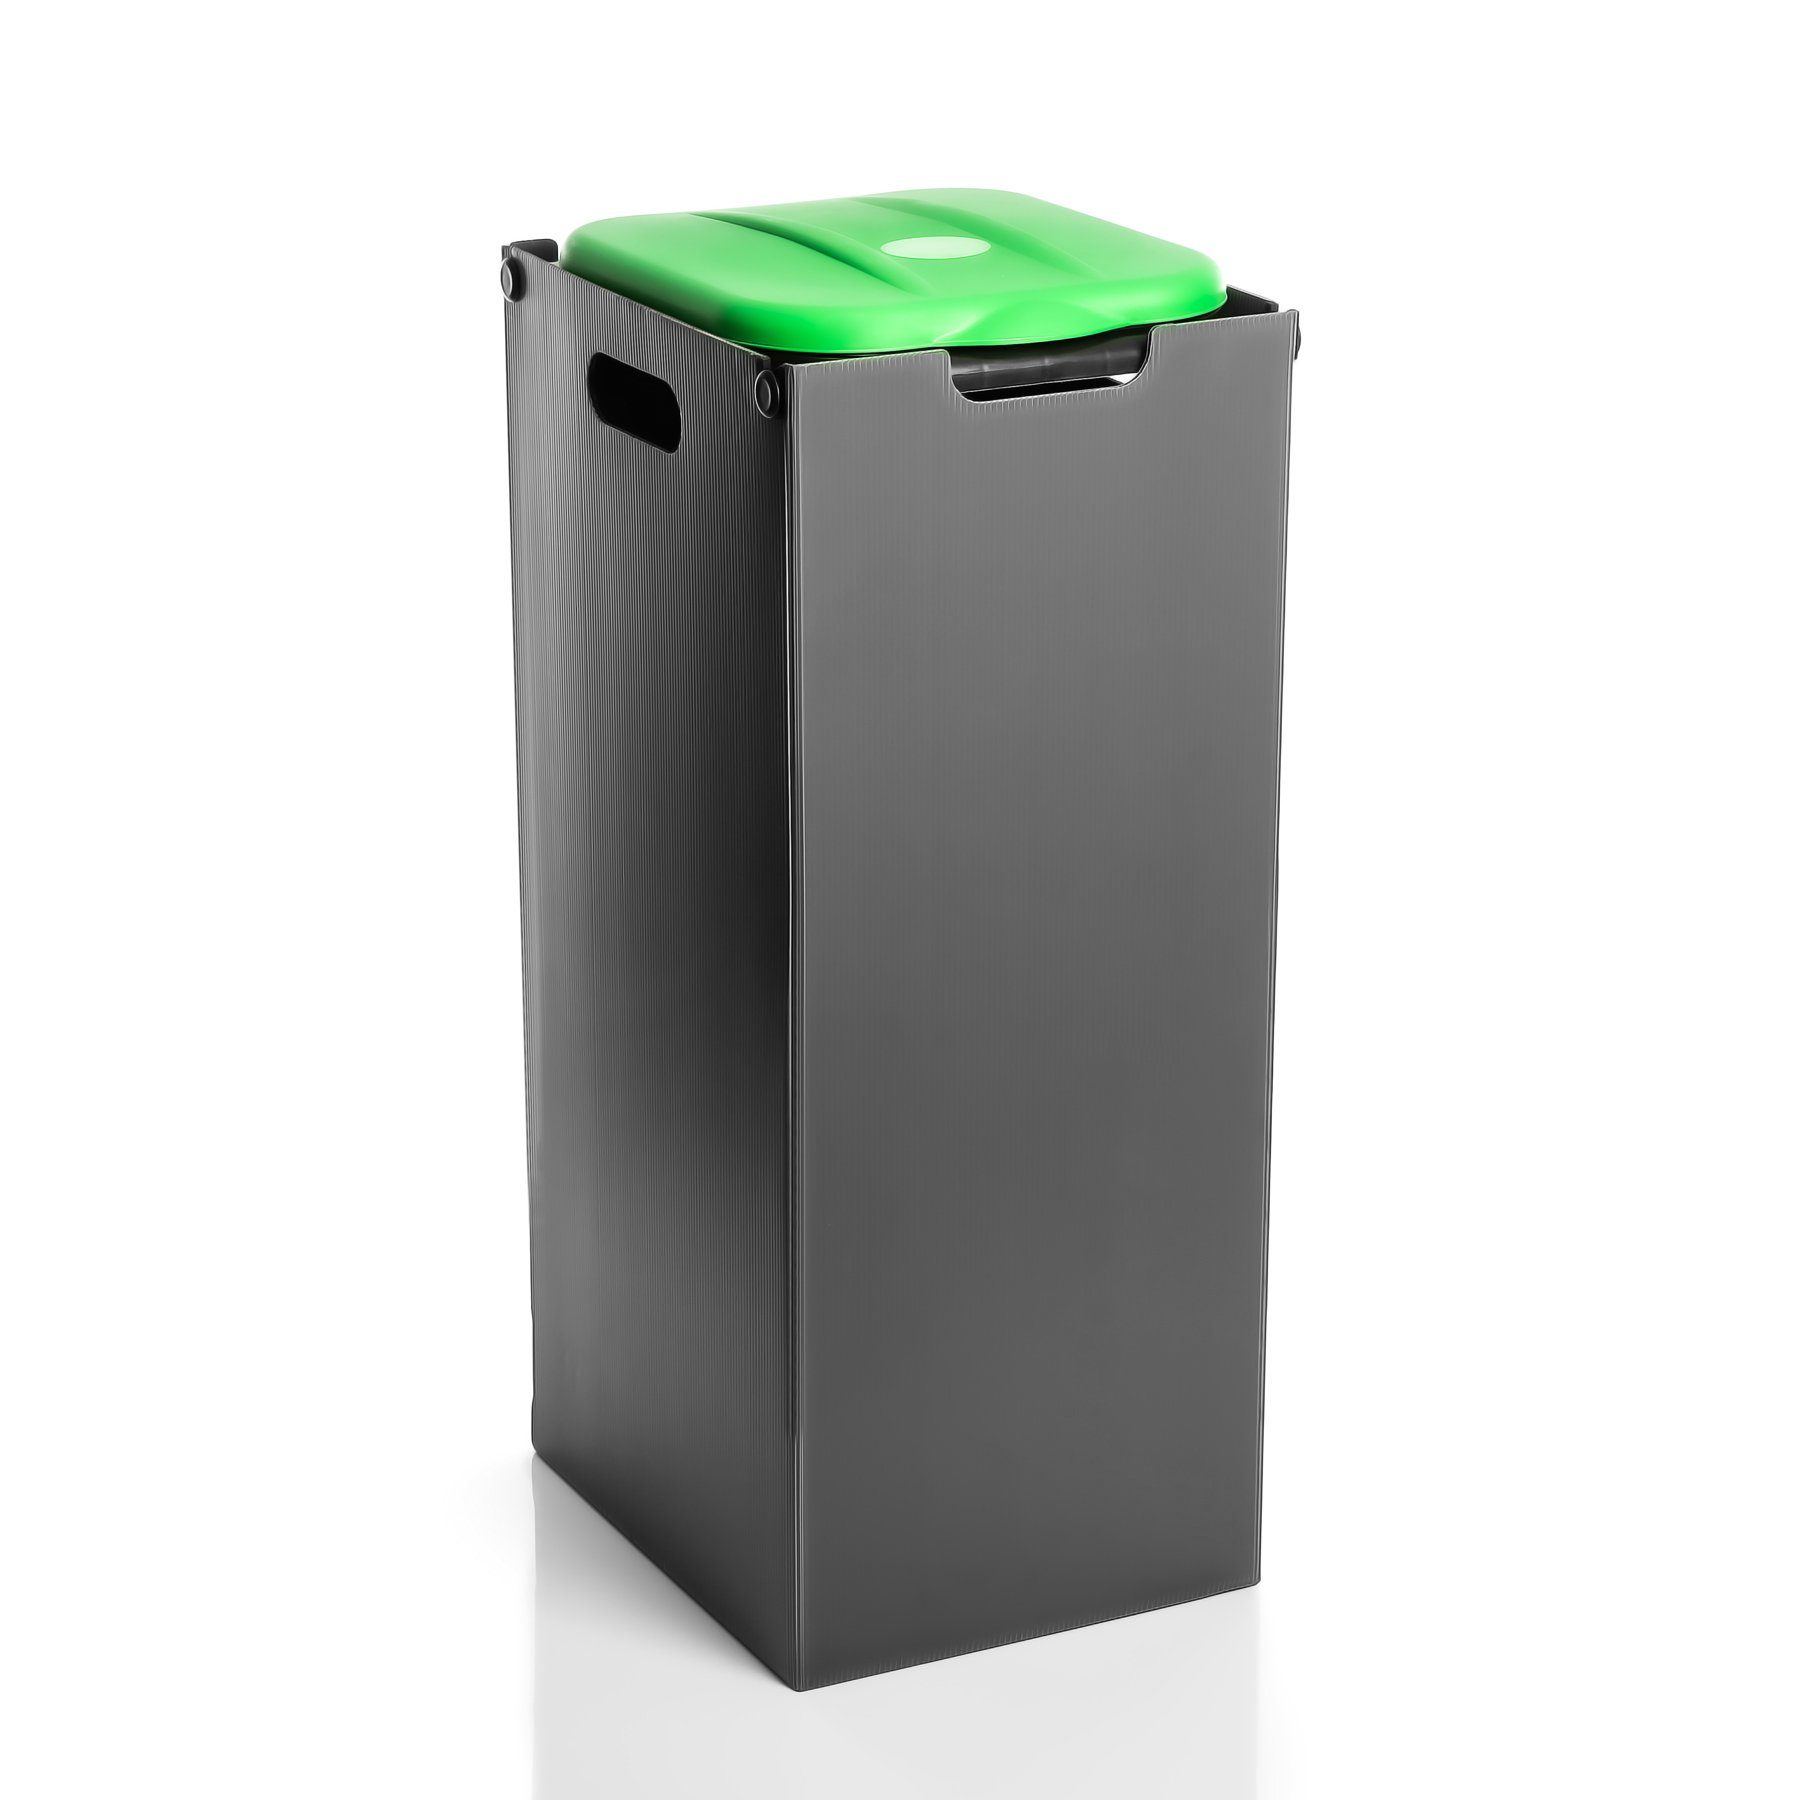 mit BigDean Sichtschutz Mülleimer 80L Grün Müllsackhalter Mülltrennsystem Müllsackständer